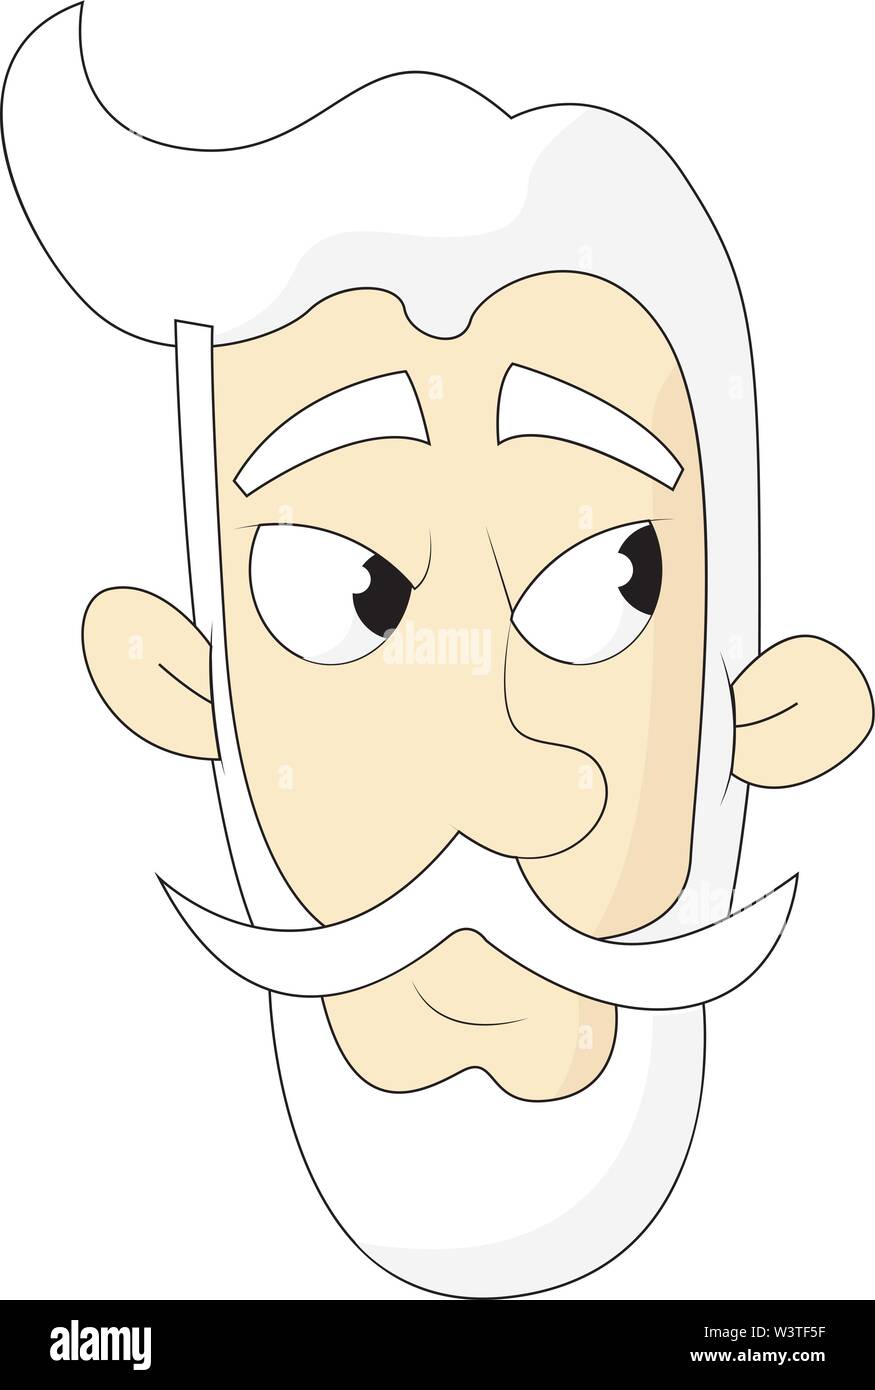 Un vieil homme en colère avec un cheveux blancs et une barbe blanche, Scénario, dessin en couleur ou d'illustration. Illustration de Vecteur